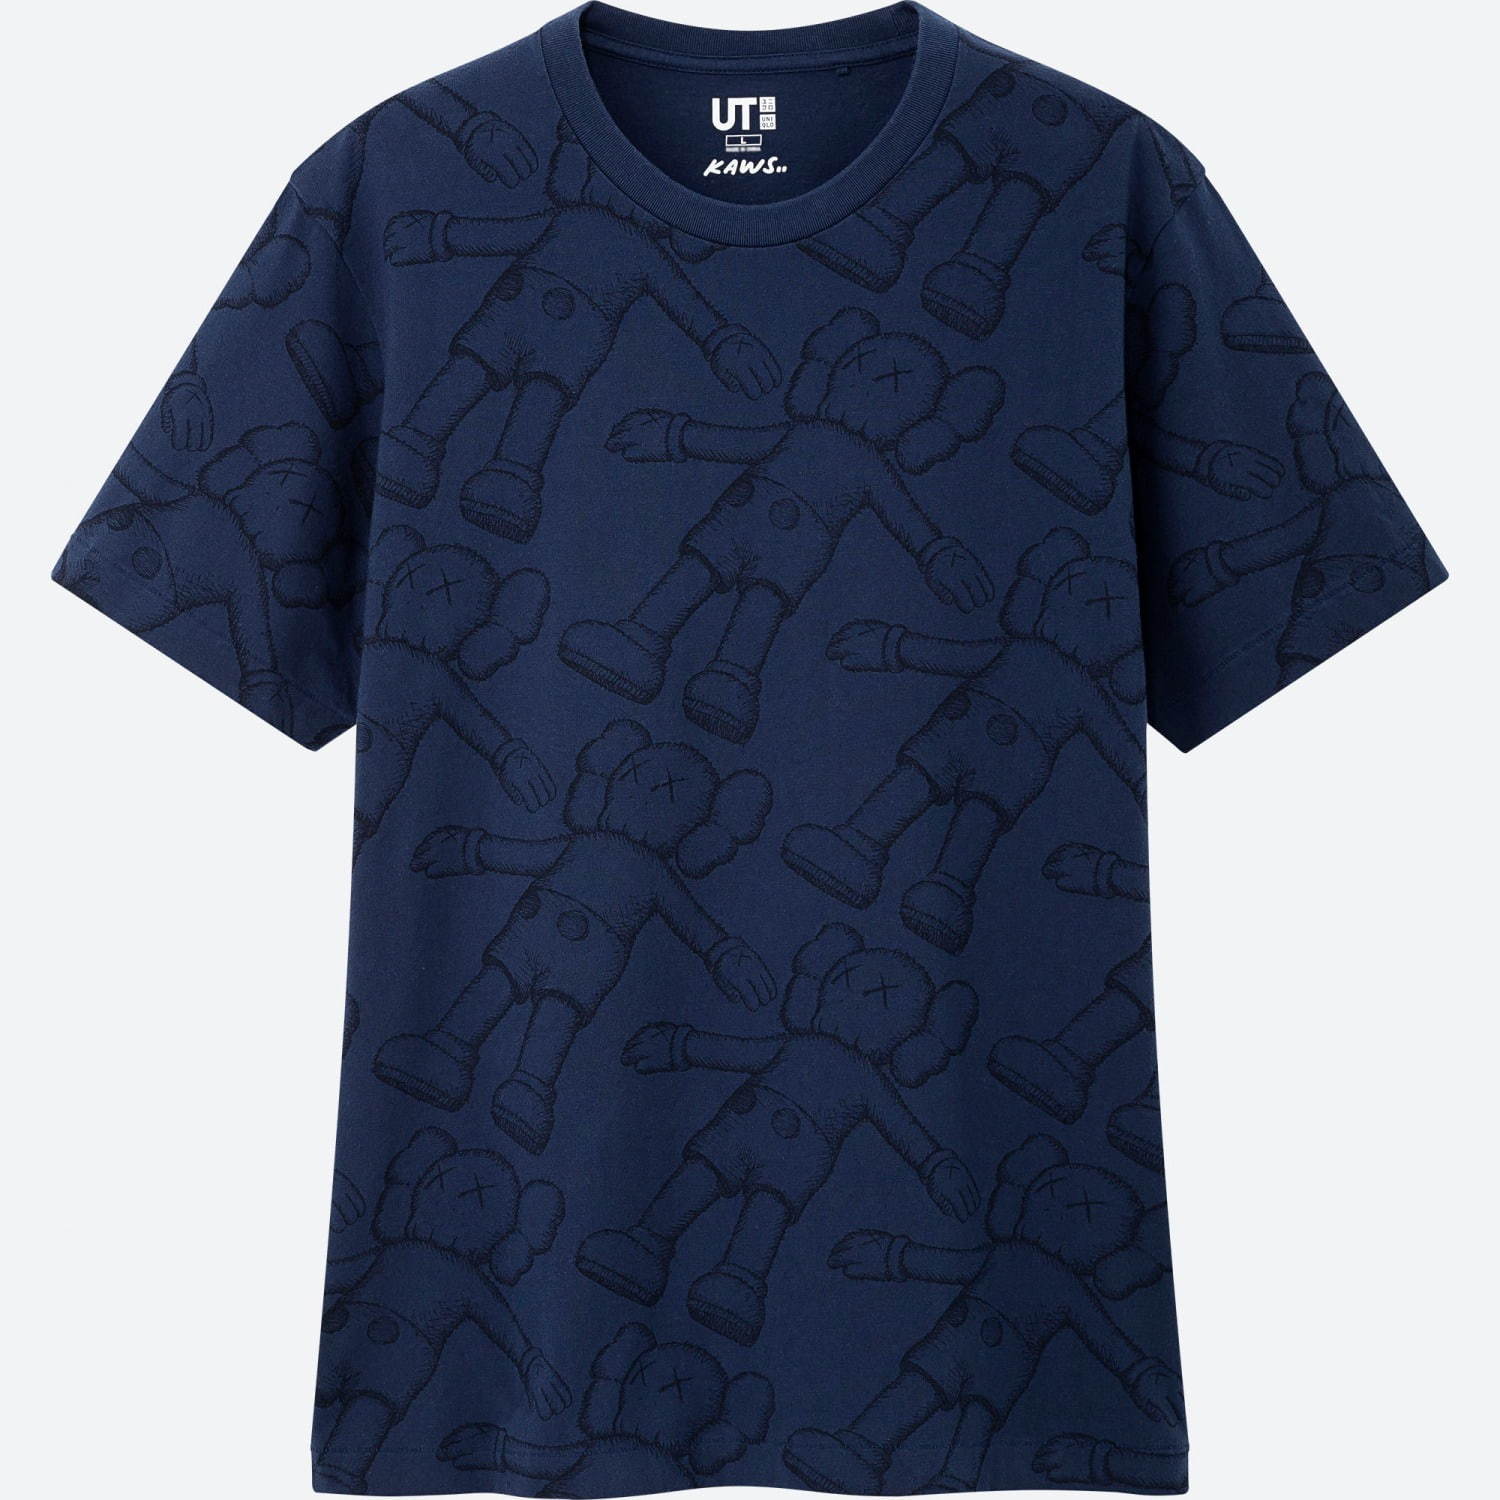 ユニクロ「UT」KAWSコラボメンズ＆キッズTシャツ - “コンパニオン”や“BFF”をプリント | 写真